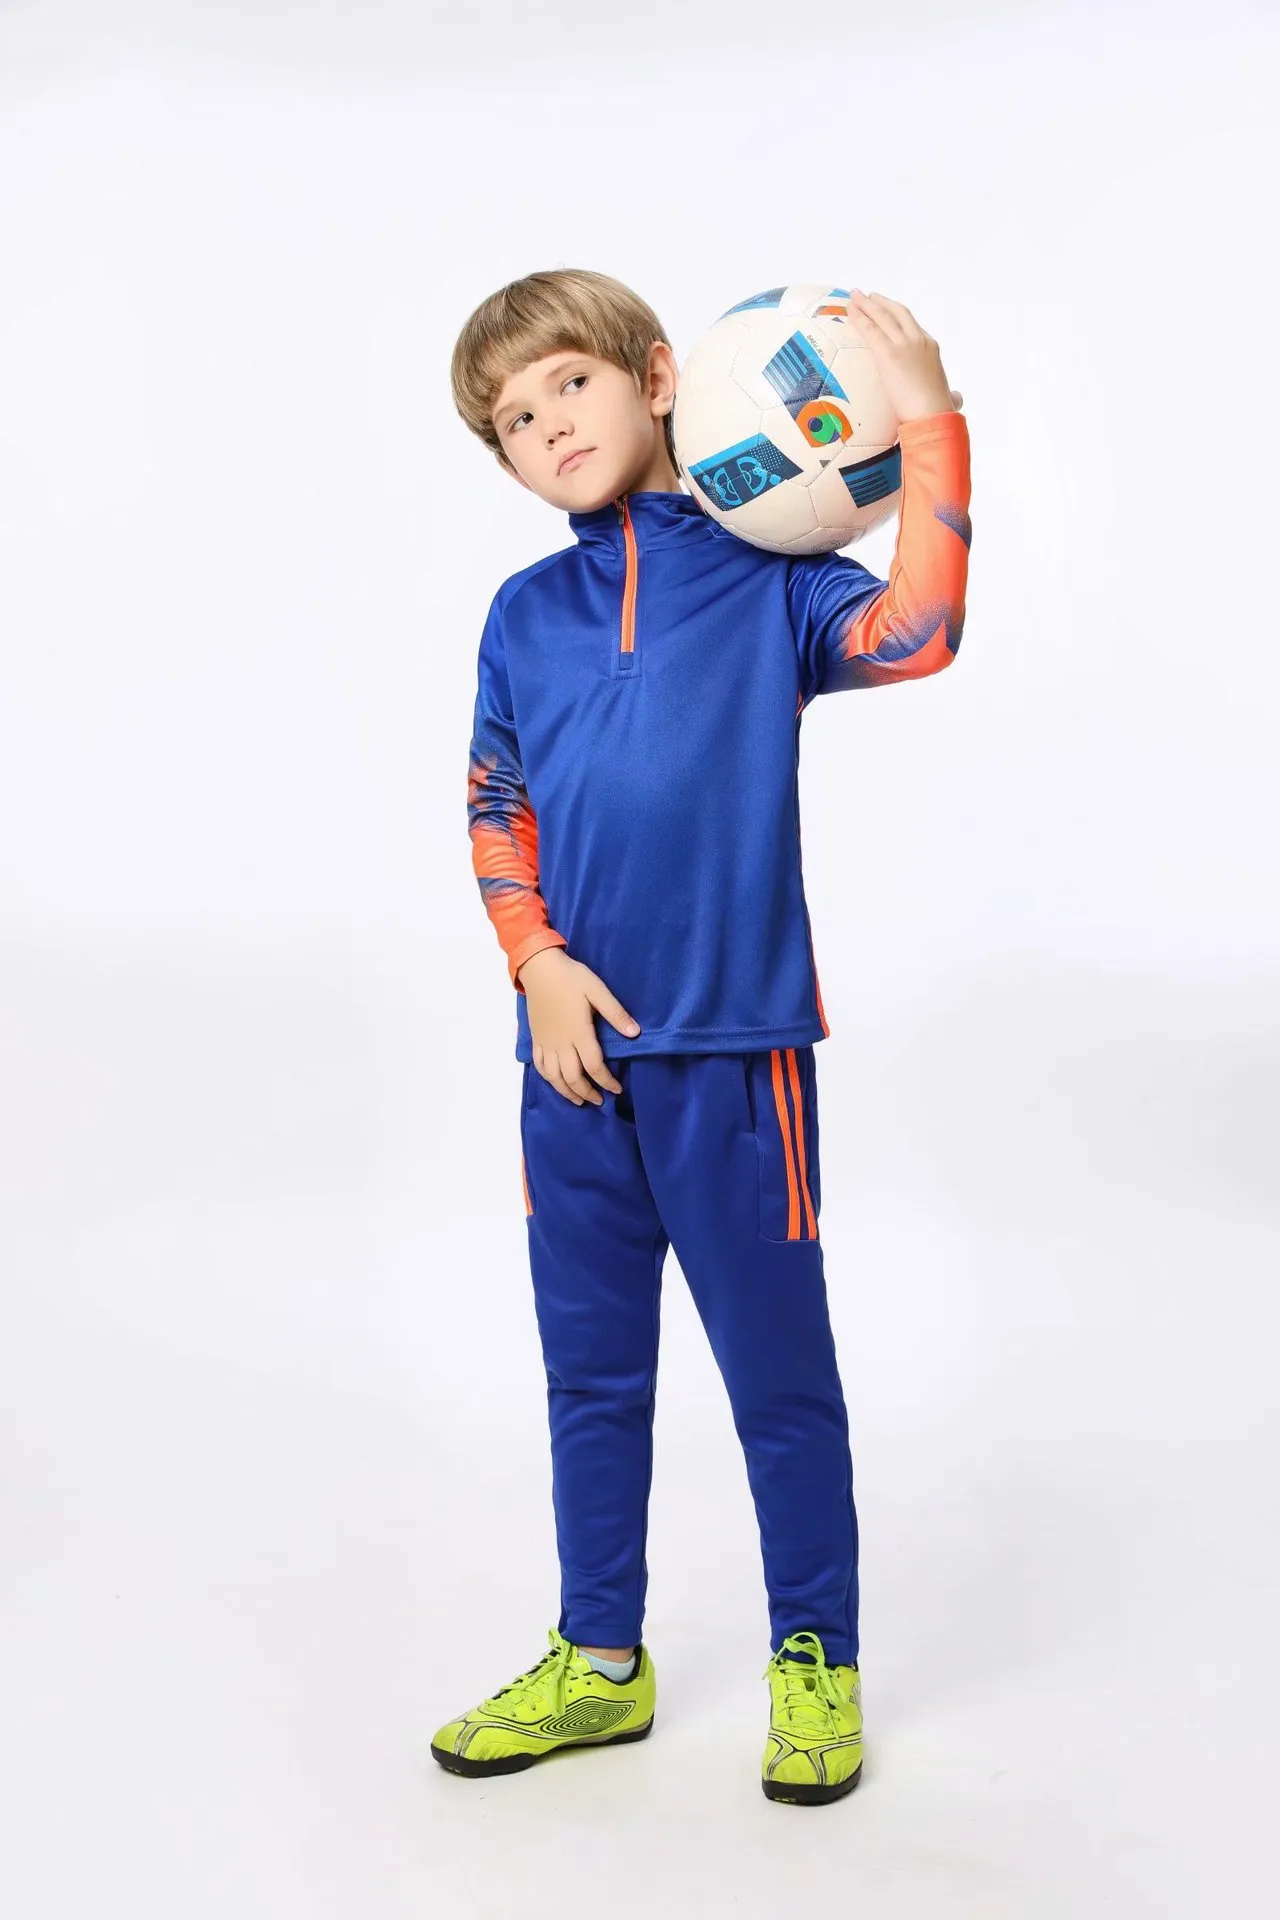 Jessie_kicks #GE08 Vapor Max Moc 2 Design 2021 Модные трикотажные изделия Детская одежда Ourtdoor Sport